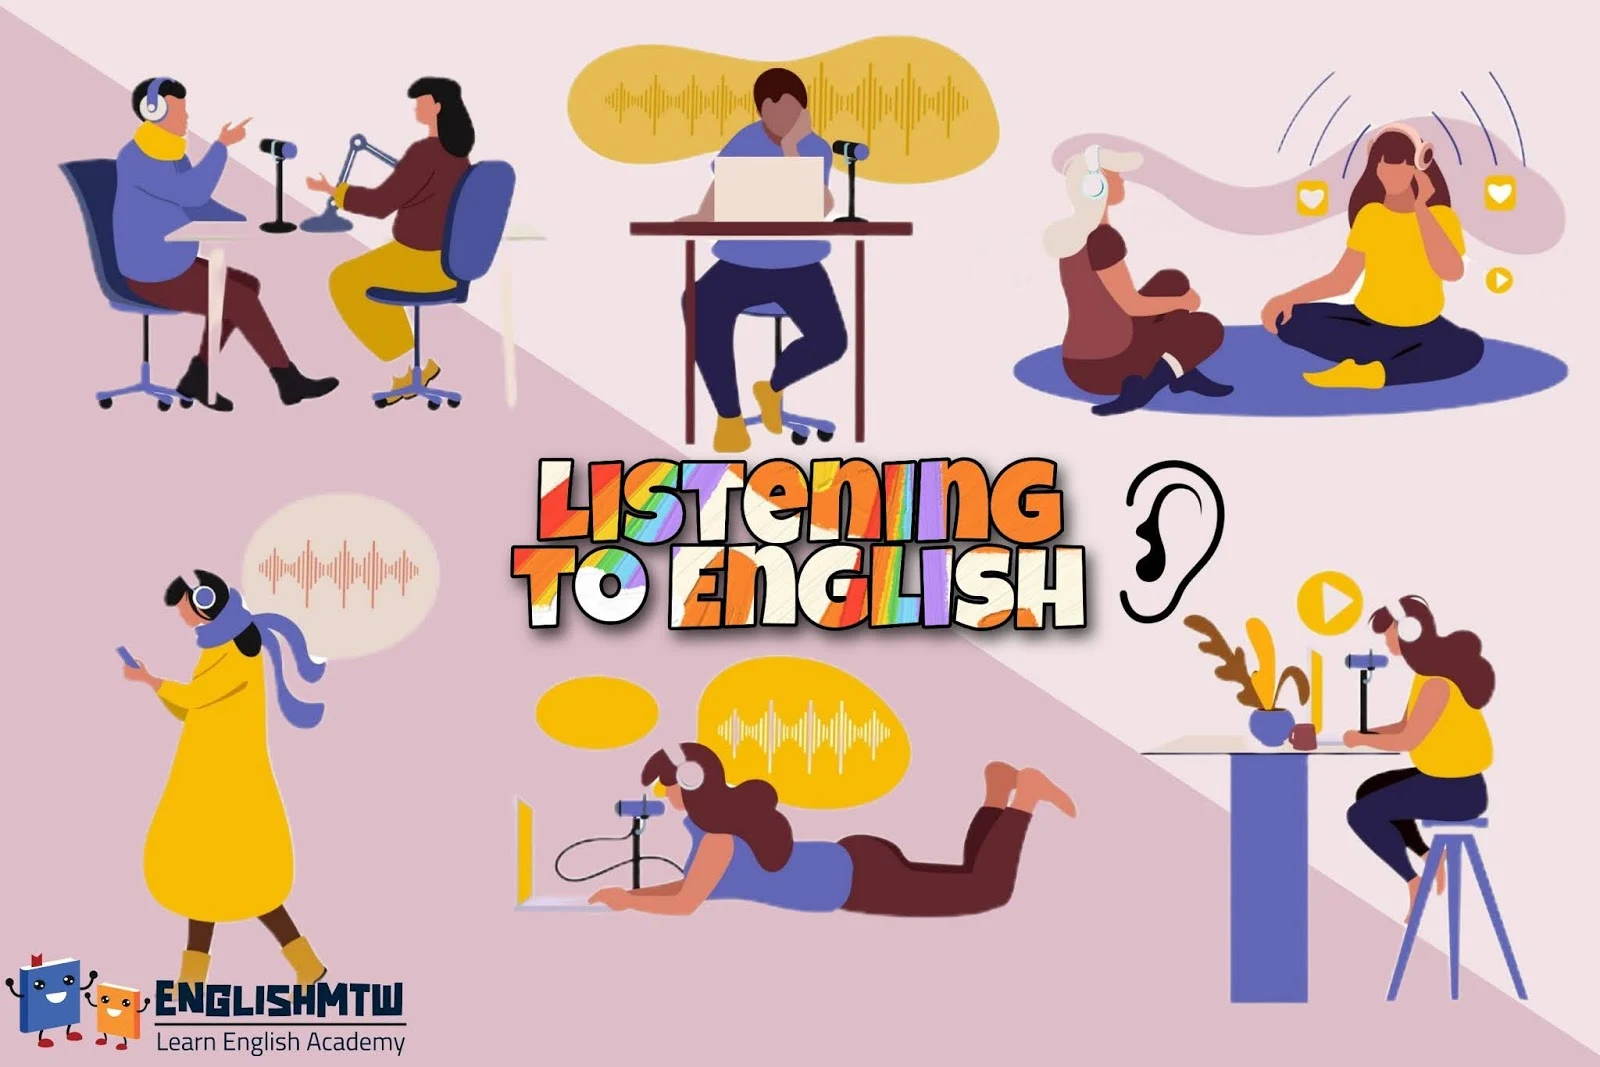 مهارات الاستماع في اللغة الانجليزية,مهارة الاستماع في اللغة الانجليزية,الاستماع للغة الانجليزية,تعلم مهارة الاستماع,مهارة الاستماع للغة الانجليزية,الاستماع الى اللغة الانجليزية,كيف استمع جيدا للغة الانجليزية,تقوية مهارة الاستماع,تحسين مهارة الاستماع,كيف اطور مهارة الاستماع,كورس تحسين مهارات الاستماع,مهارة الاستماع,مهارة الاستماع انجليزي,تعلم اللغة الانجليزية,كورس تقوية مهارة الاستماع,اللغة الانجليزية,كورس شامل لتعلم اللغة الانجليزية,تعلم اللغة الإنجليزية